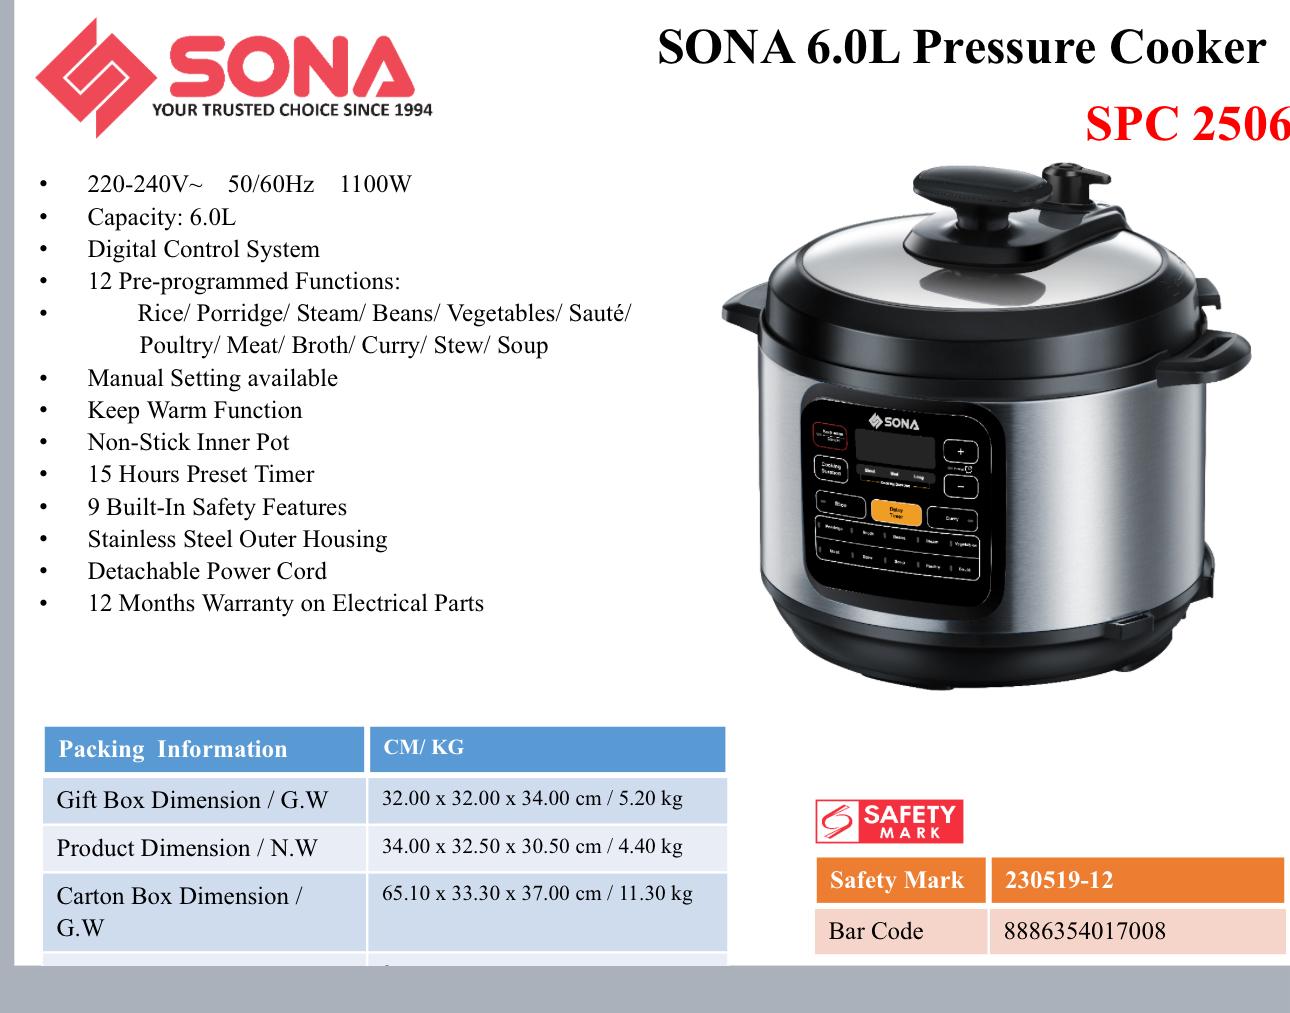 Sona Pressure Cooker 6.0L SPC 2506